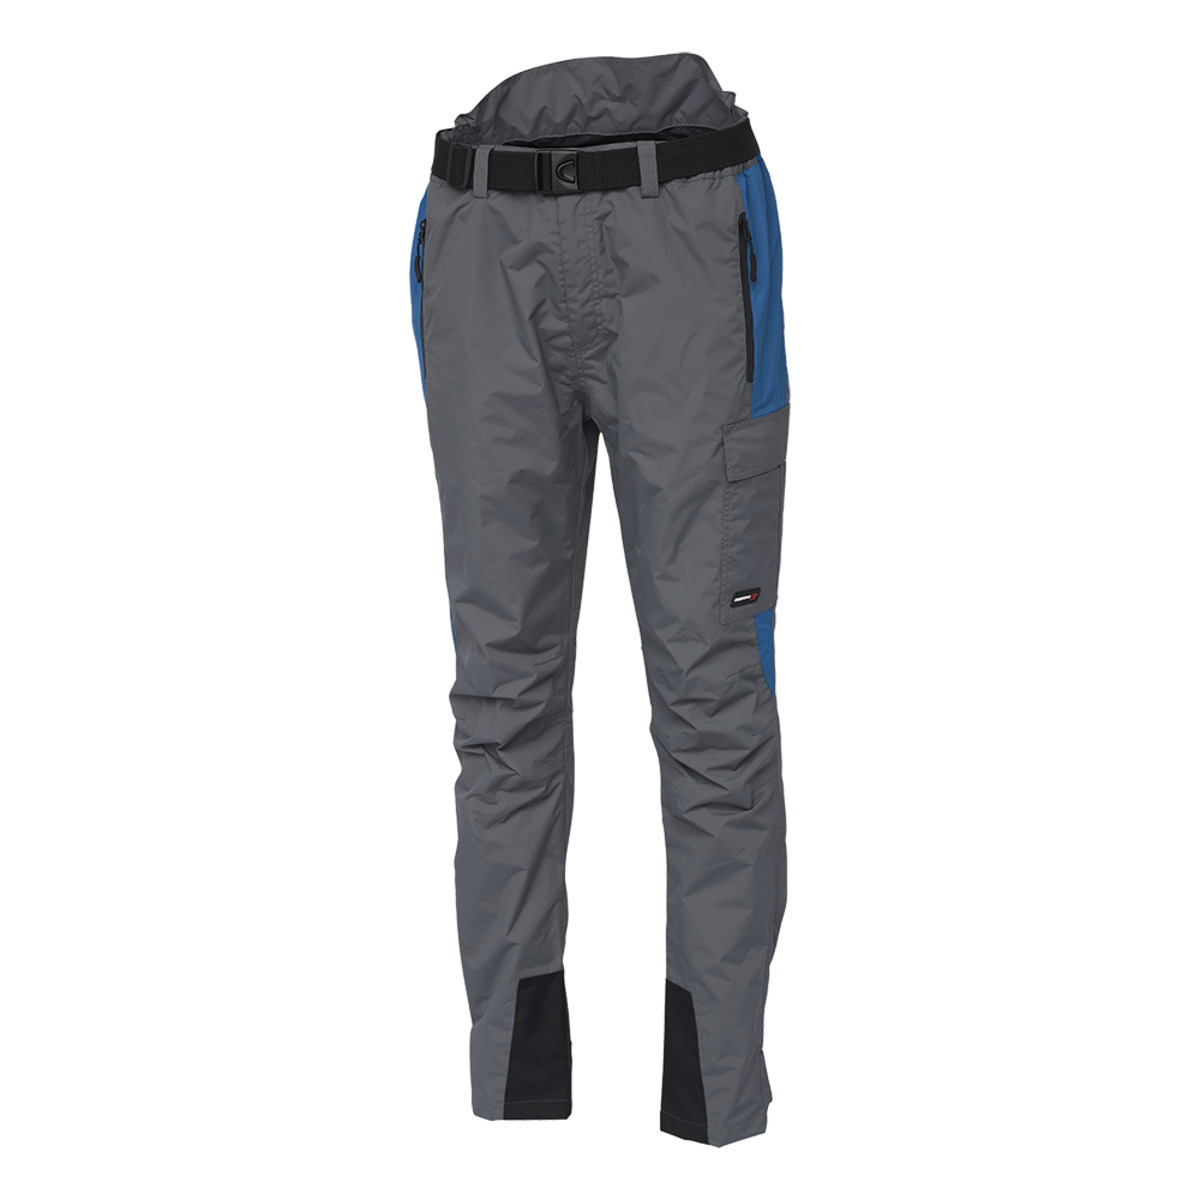 Scierra Helmsdale Fishing Trousers - S SEAPORT BLUE